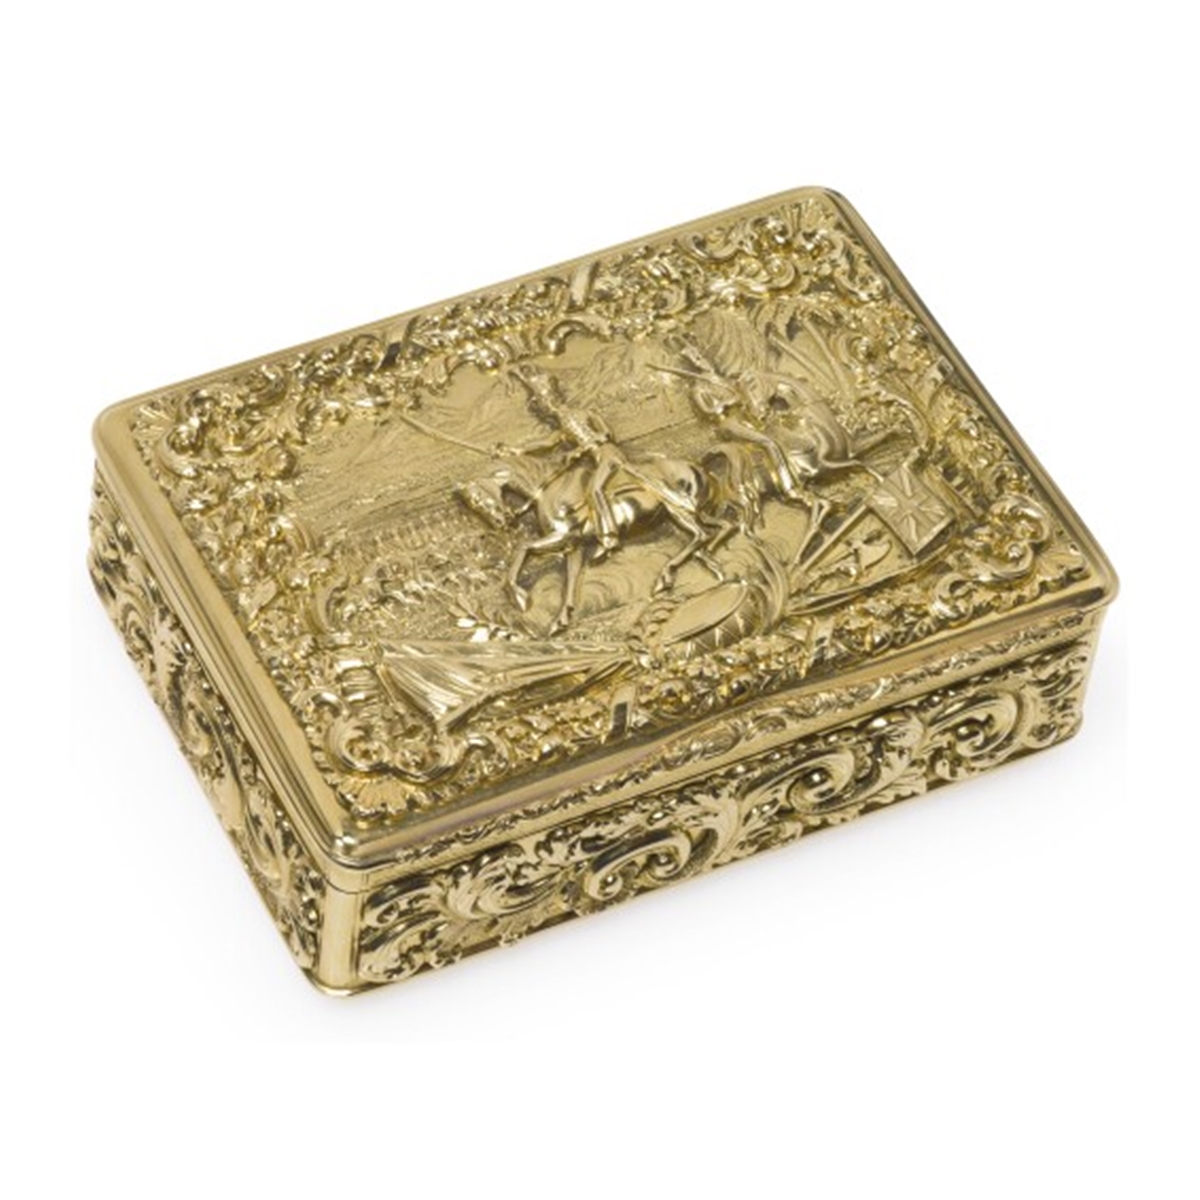 威廉四世黃金鼻煙盒